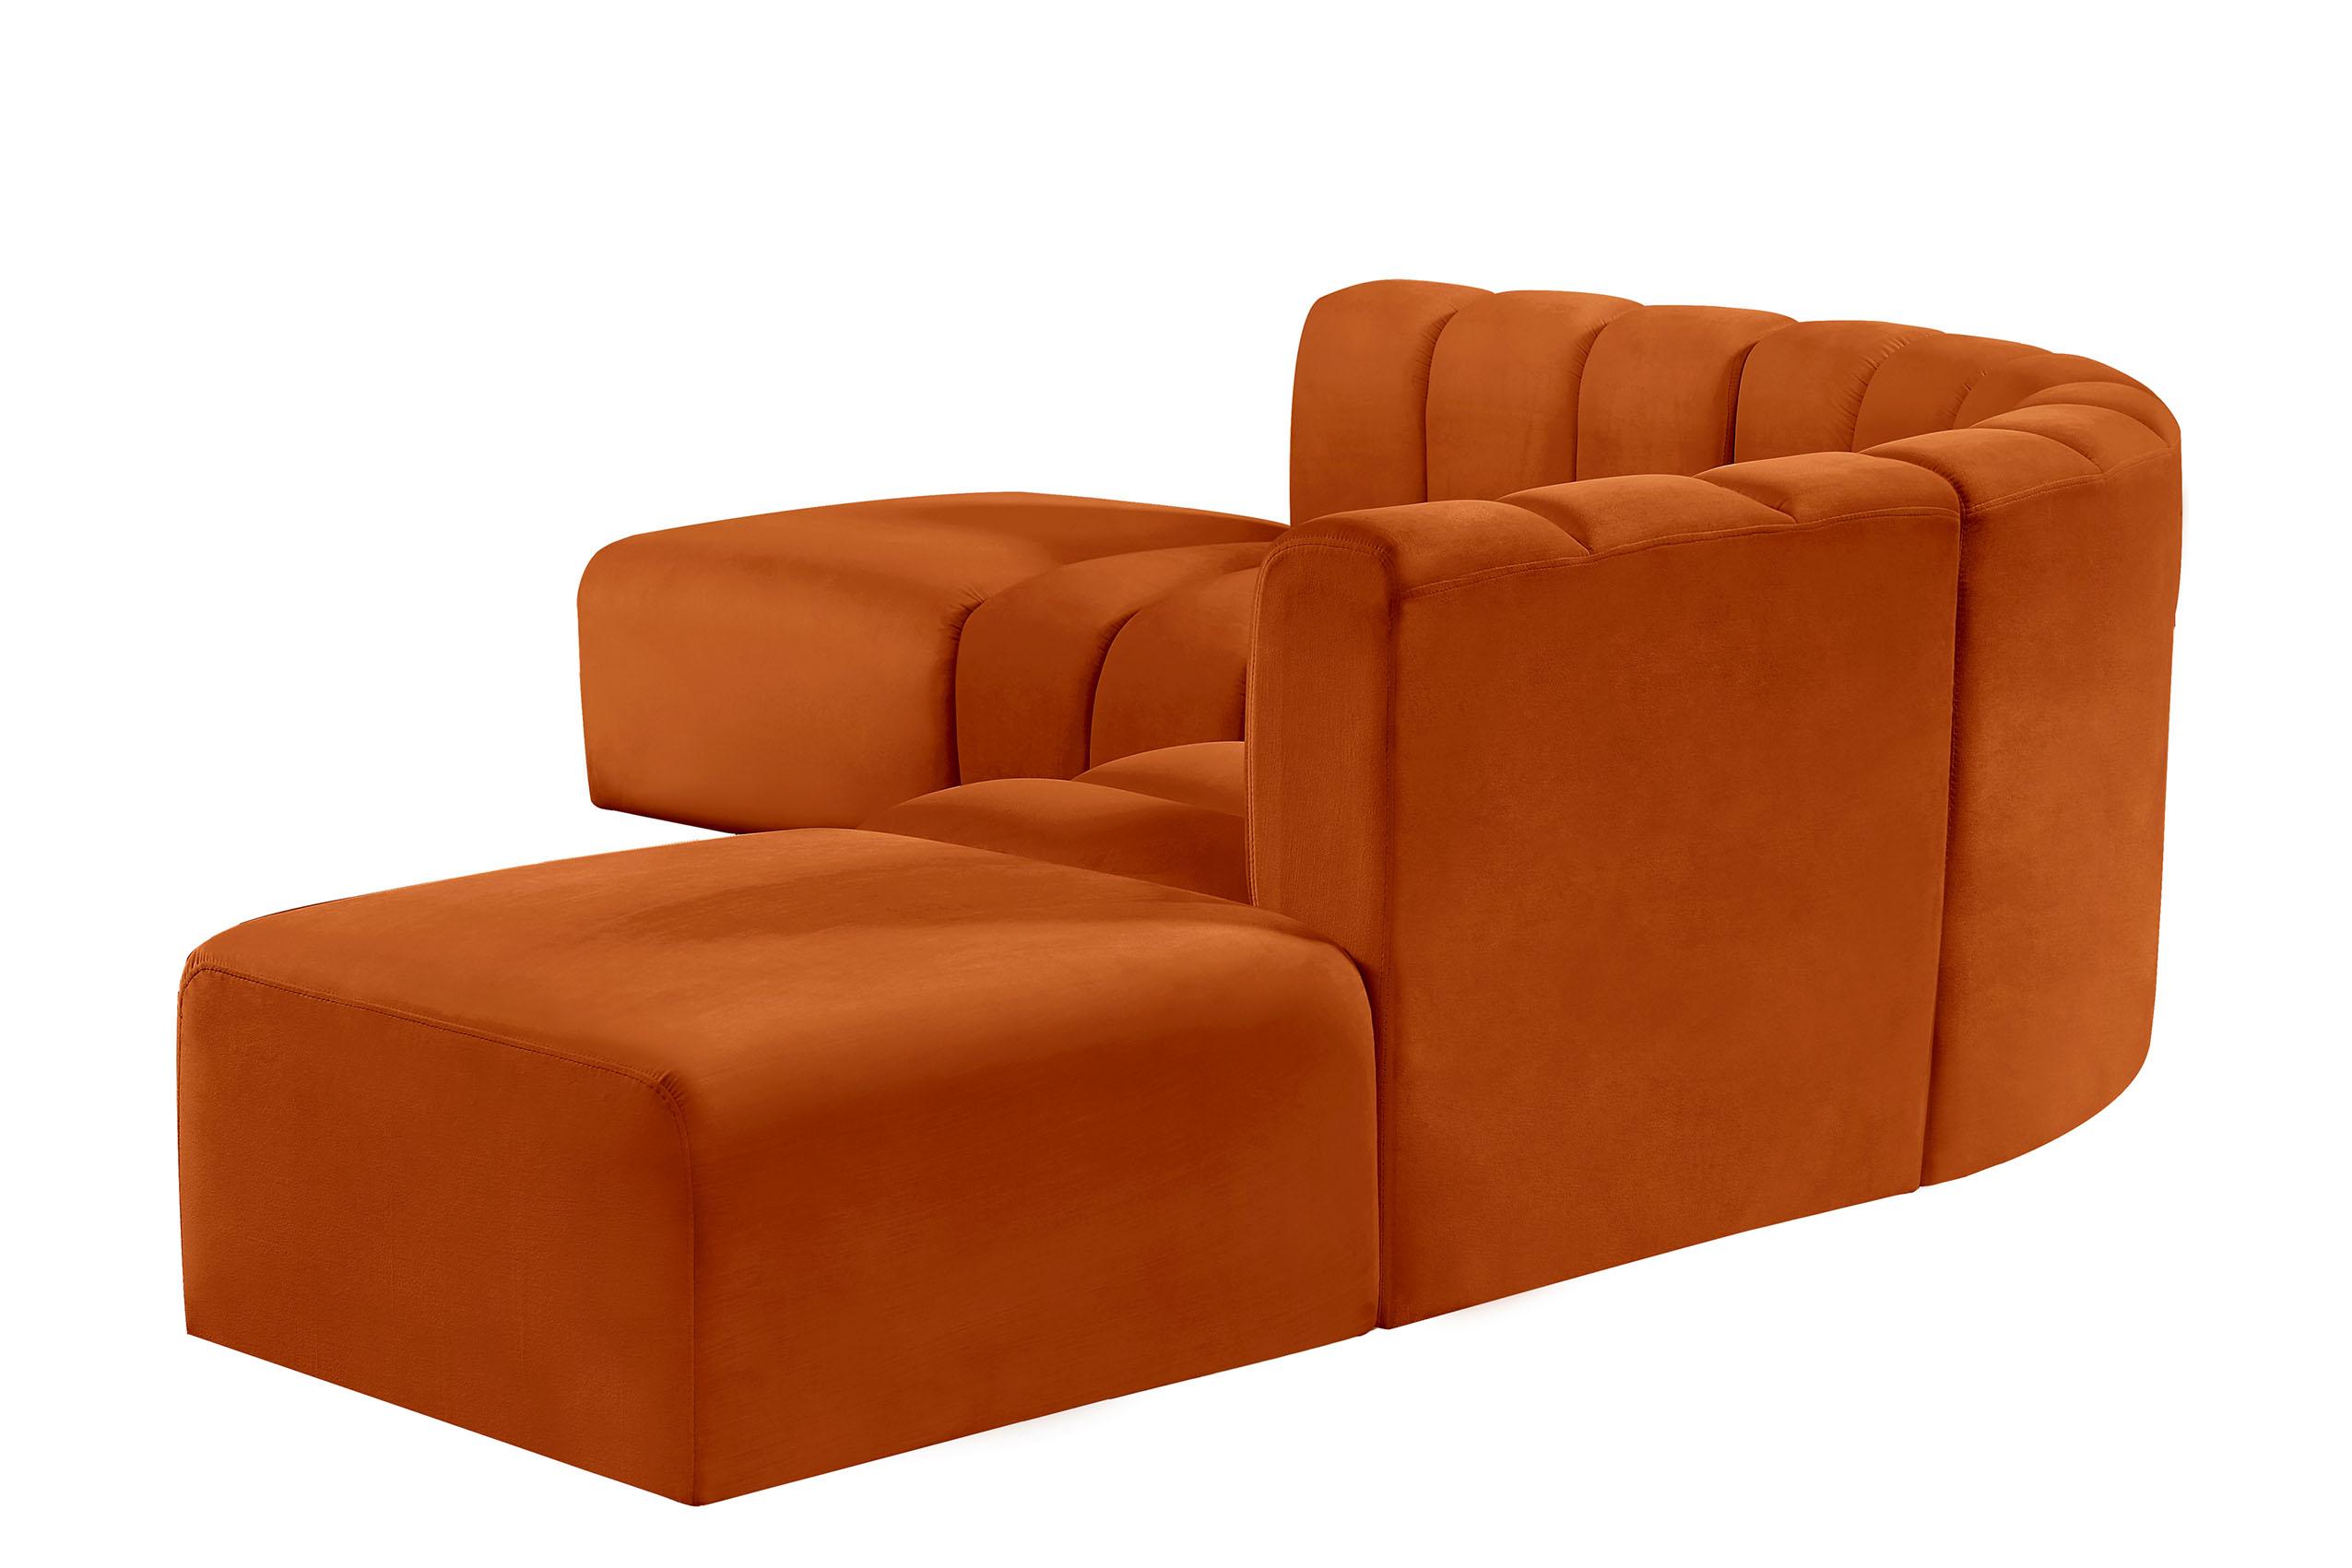 

    
103Cognac-S6C Meridian Furniture Modular Sectional Sofa
